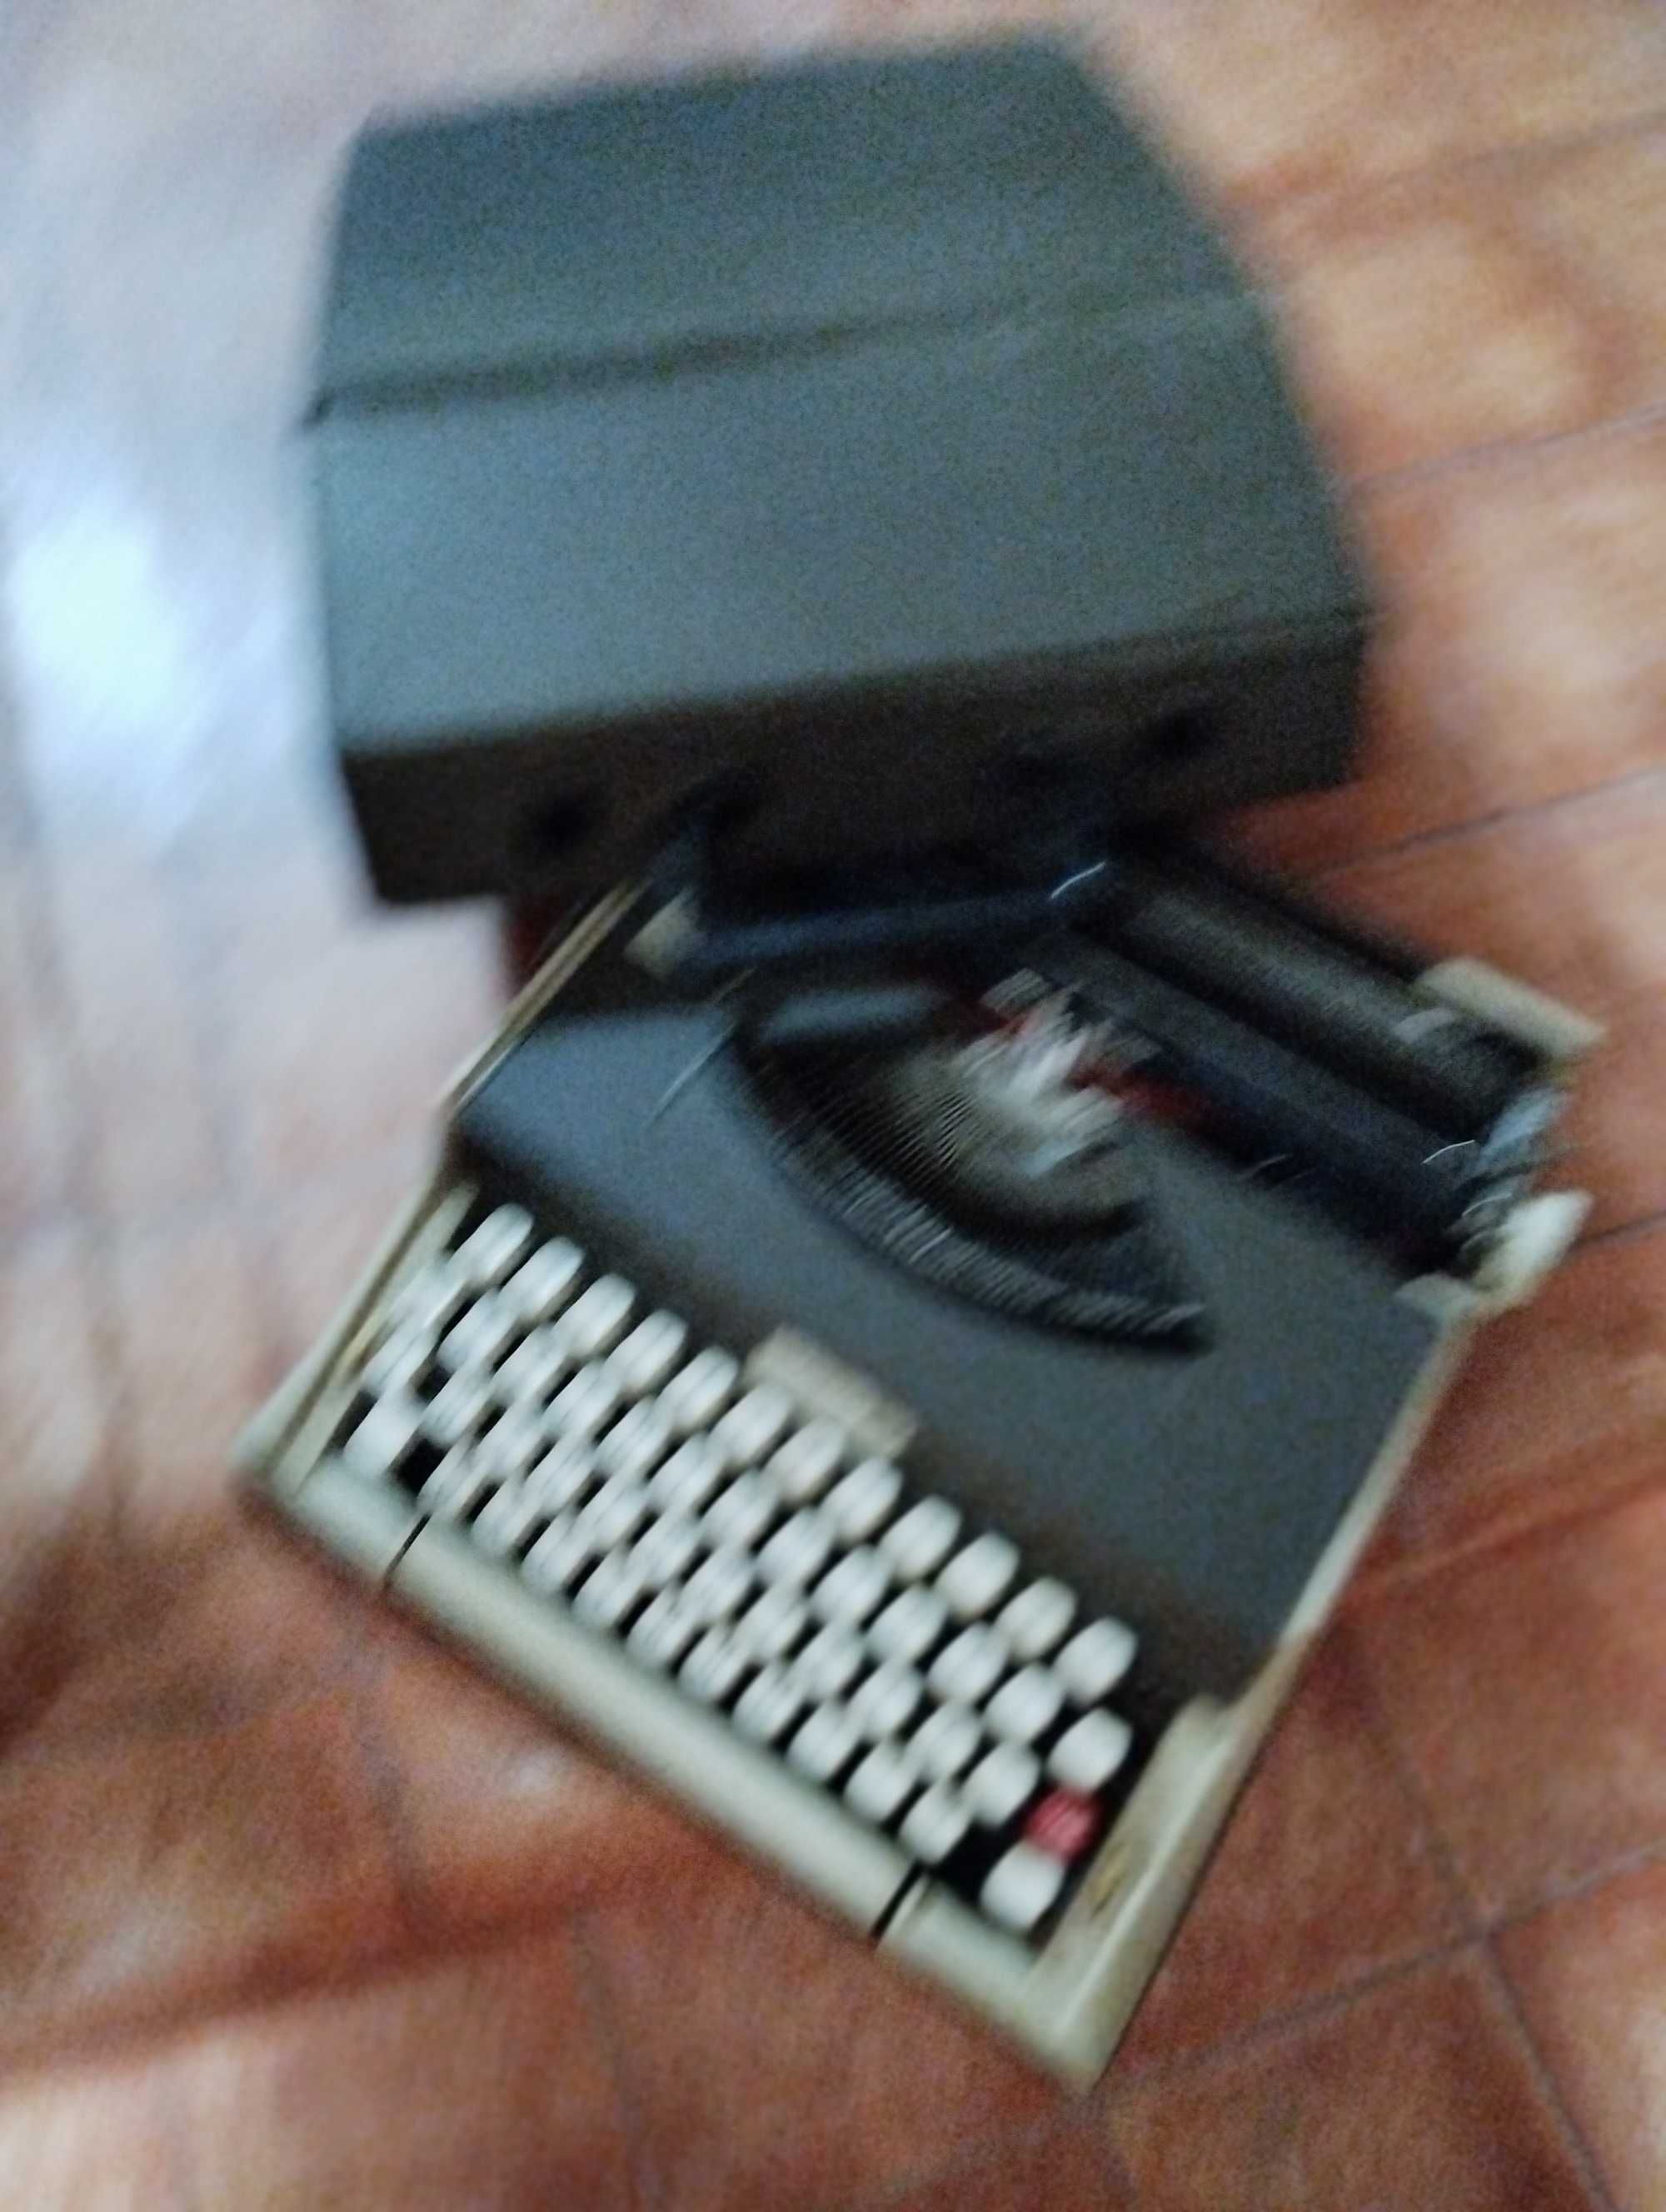 Maquina escrever com mala